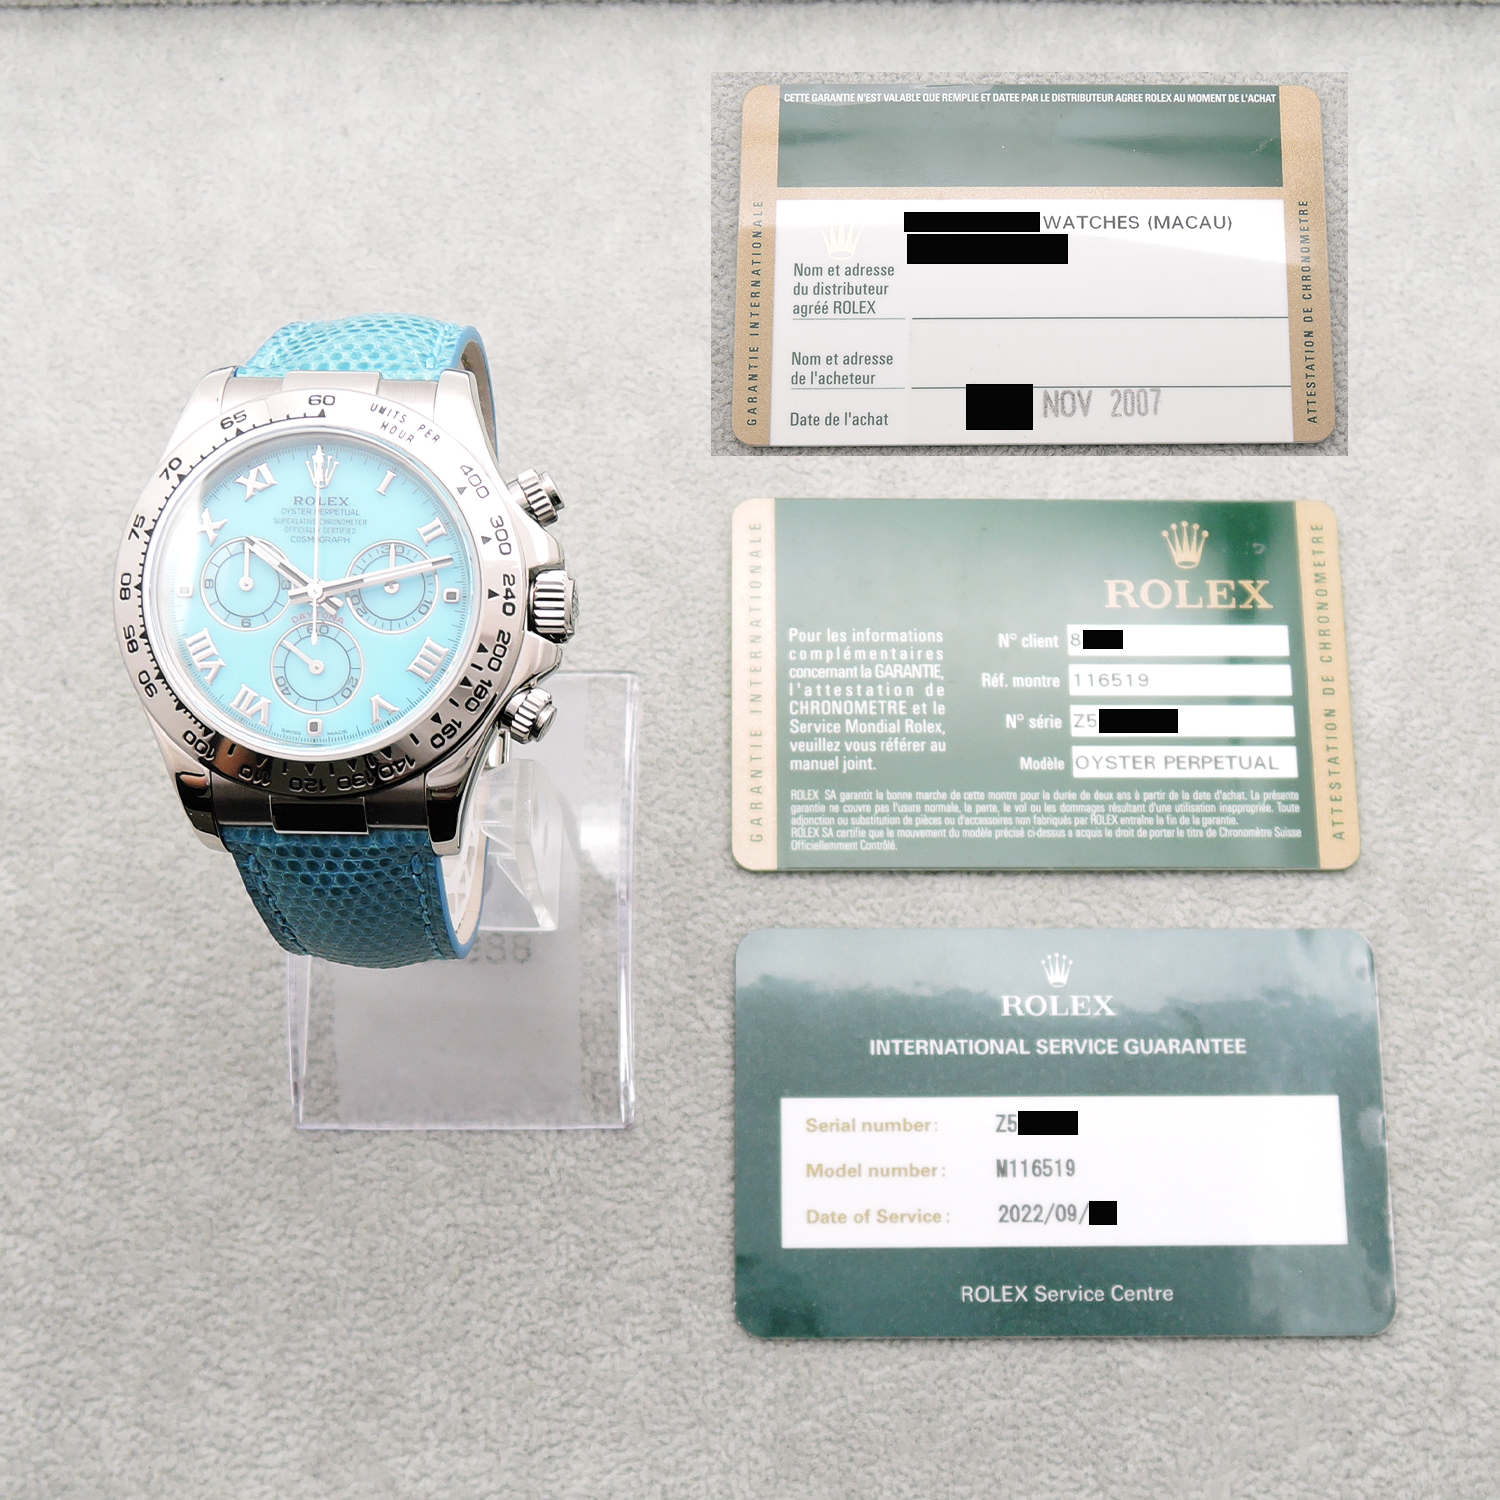 ロレックス デイトナビーチ ブルー 116519 ターコイズブルー文字盤 WG Rolex Daytona Beach Turquoise blue dial 保証書 サービス保証書のイメージ画像